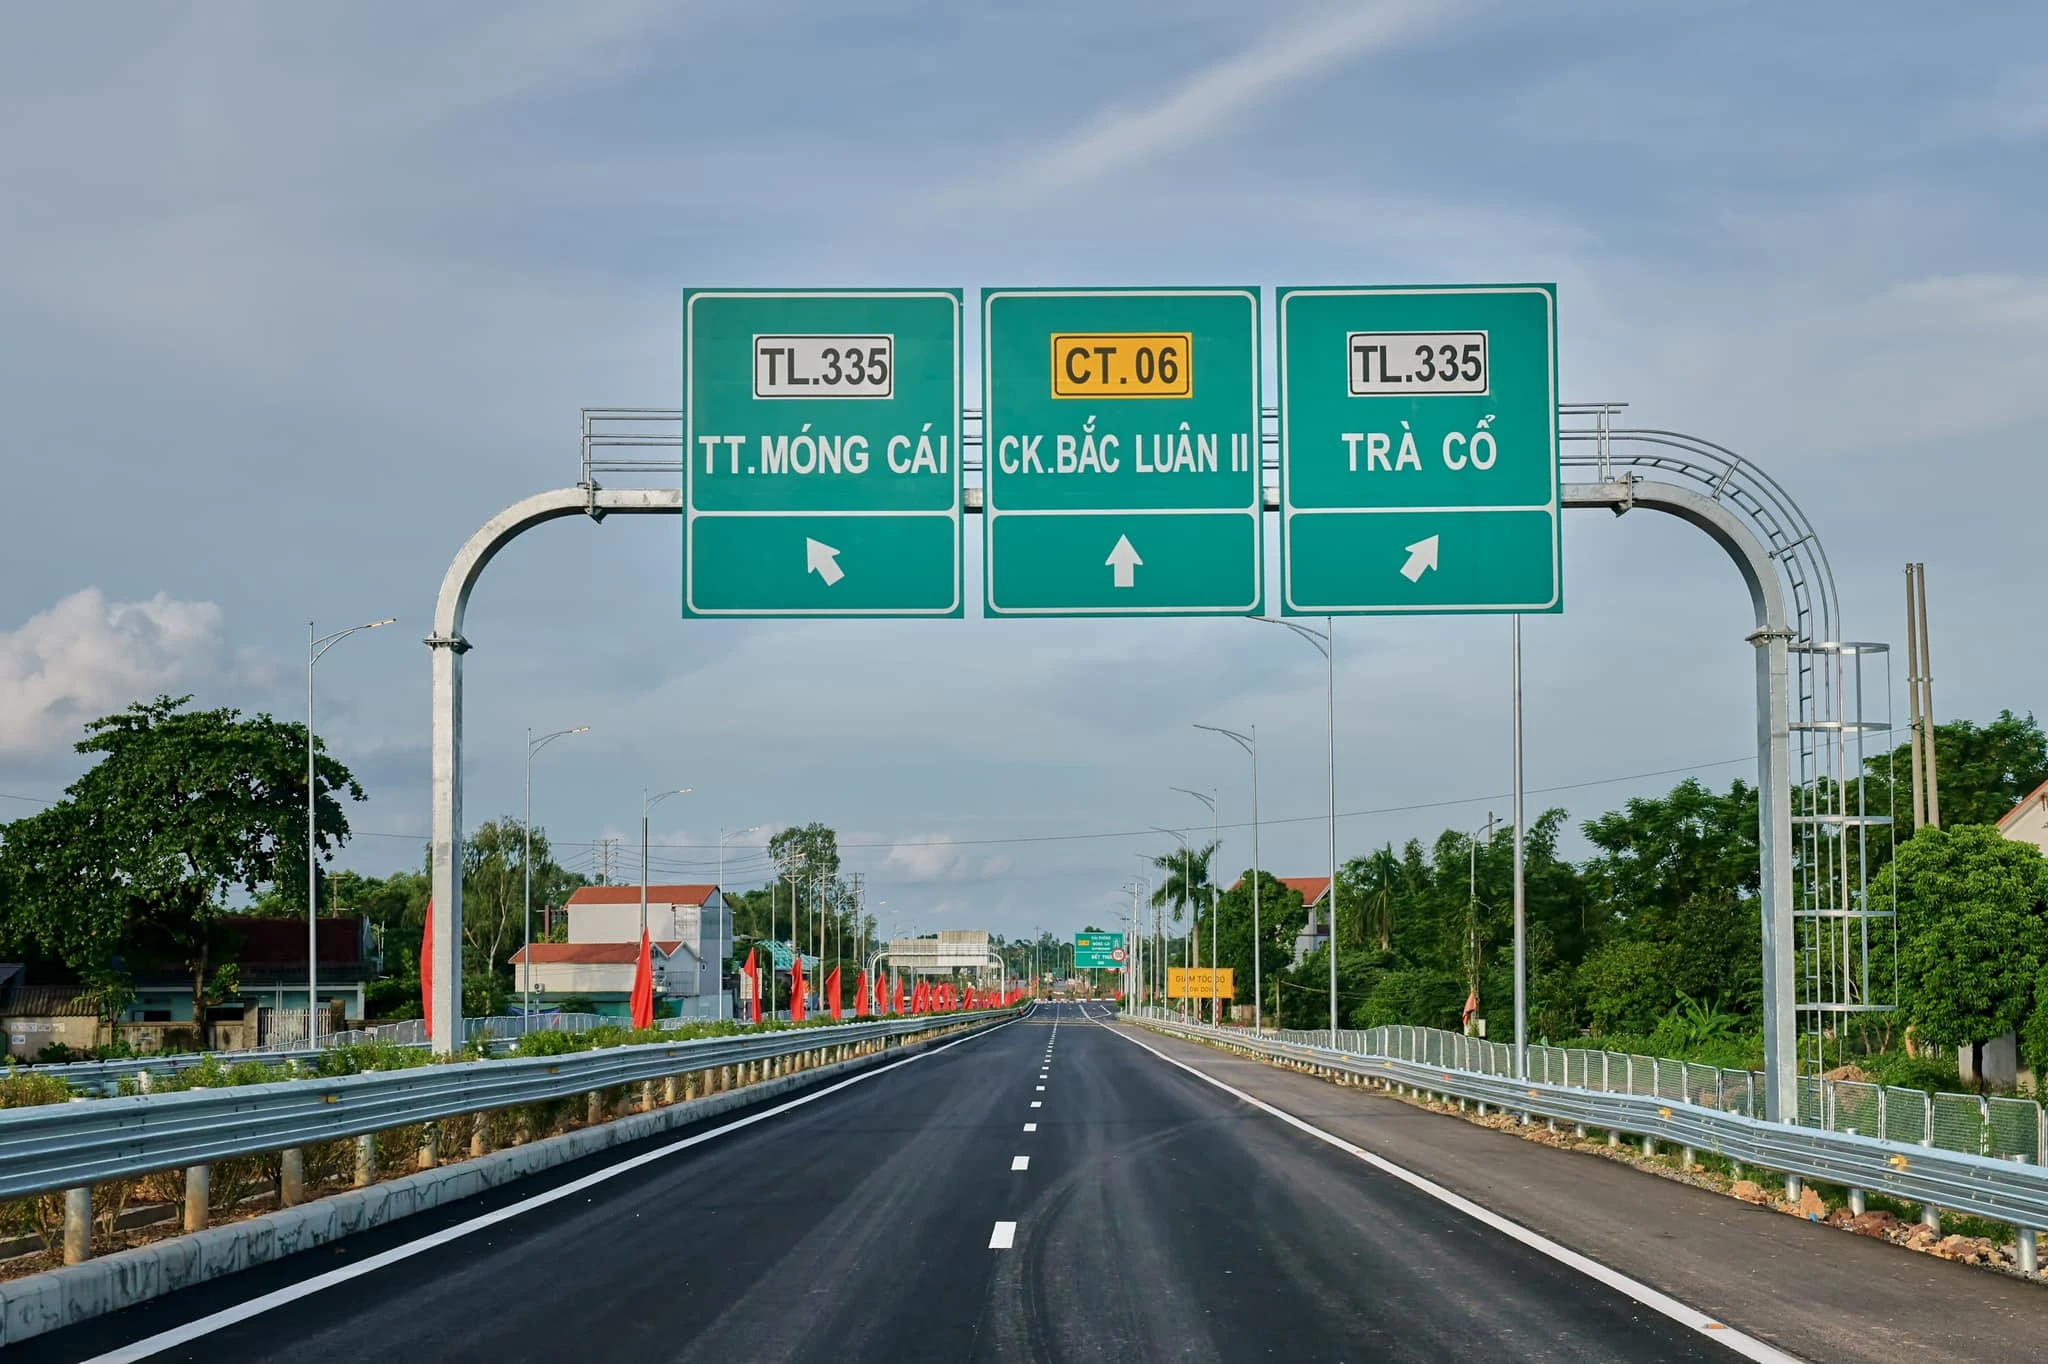 Thông xe sau hơn 2 năm từ khi hoàn thành giải phòng mặt bằng với tổng vốn đầu tư gần 12.771 tỷ đồng, đưa Quảng Ninh trở thành một hình mẫu về huy động các nguồn vốn đầu tư để xây dựng đường cao tốc với thời gian thi công ngắn kỷ lục.